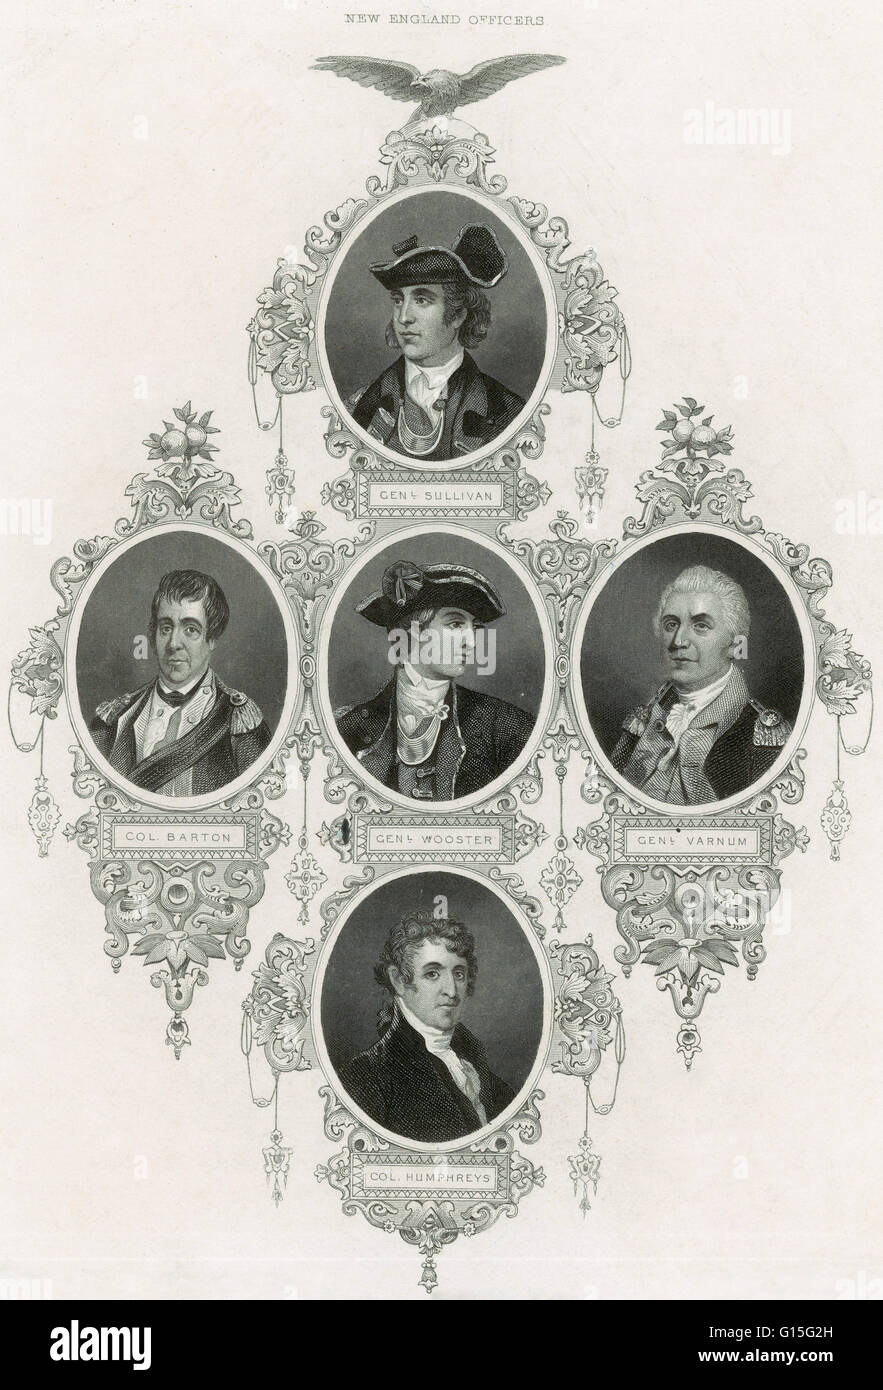 Los oficiales de Nueva Inglaterra desde el 1700: General Sullivan (superior); la fila central L A R: El Coronel Barton, General Wooster, General Varnmum; Coronel Humphreus (abajo). Foto de stock